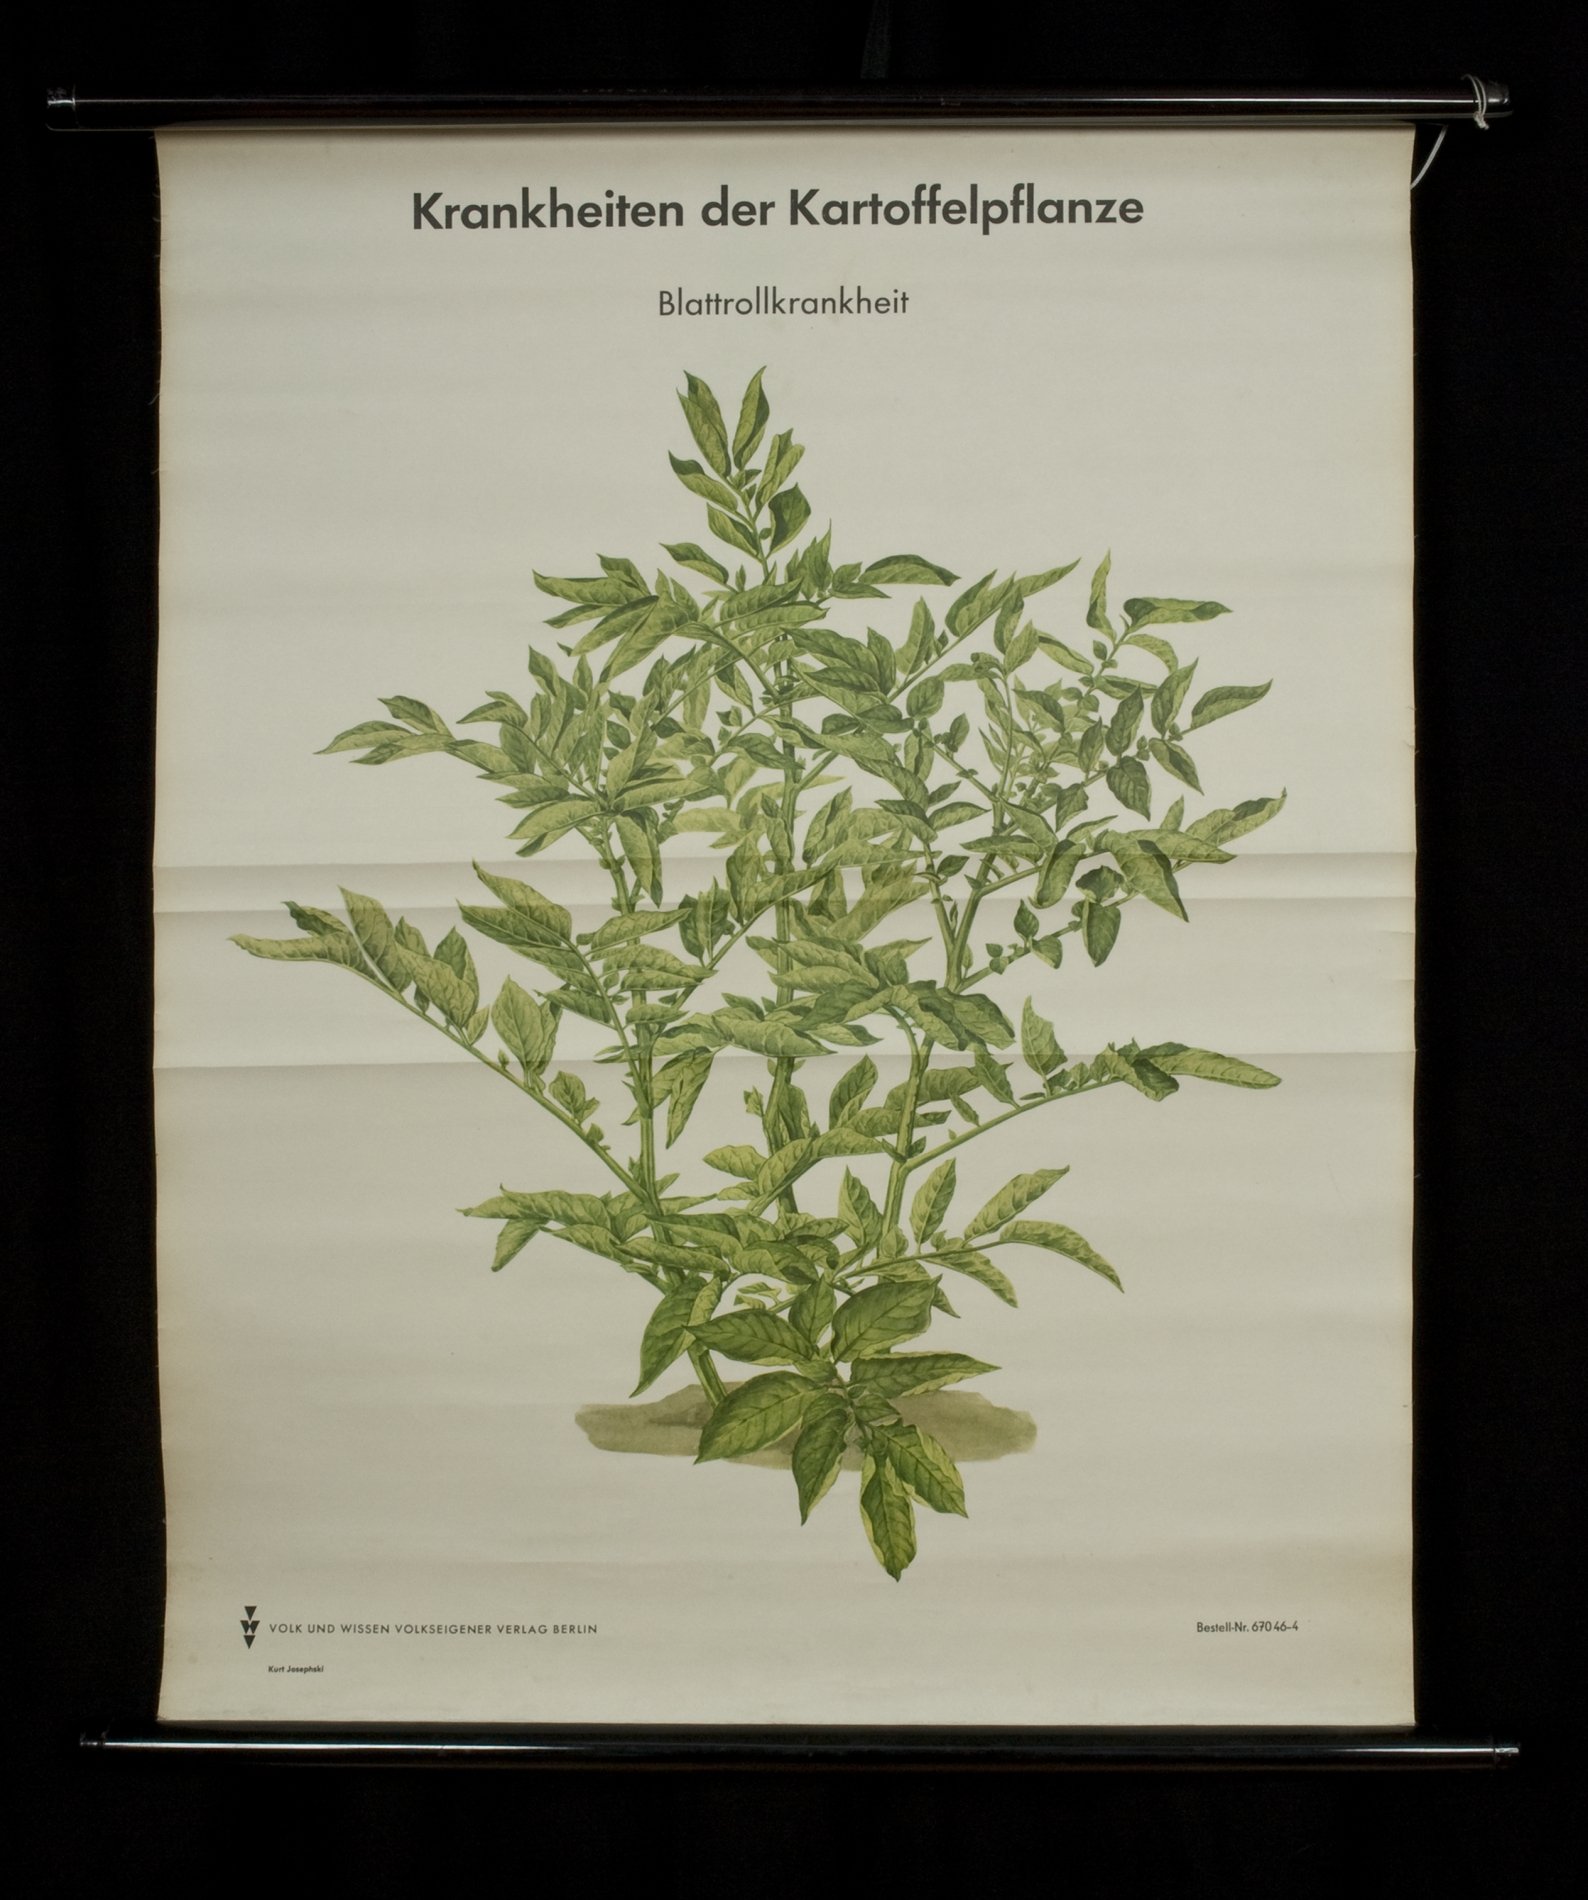 Rollbild "Krankheiten der Kartoffelpflanze - Blattrollkrankheit" (Stiftung Domäne Dahlem - Landgut und Museum, Weiternutzung nur mit Genehmigung des Museums CC BY-NC-SA)